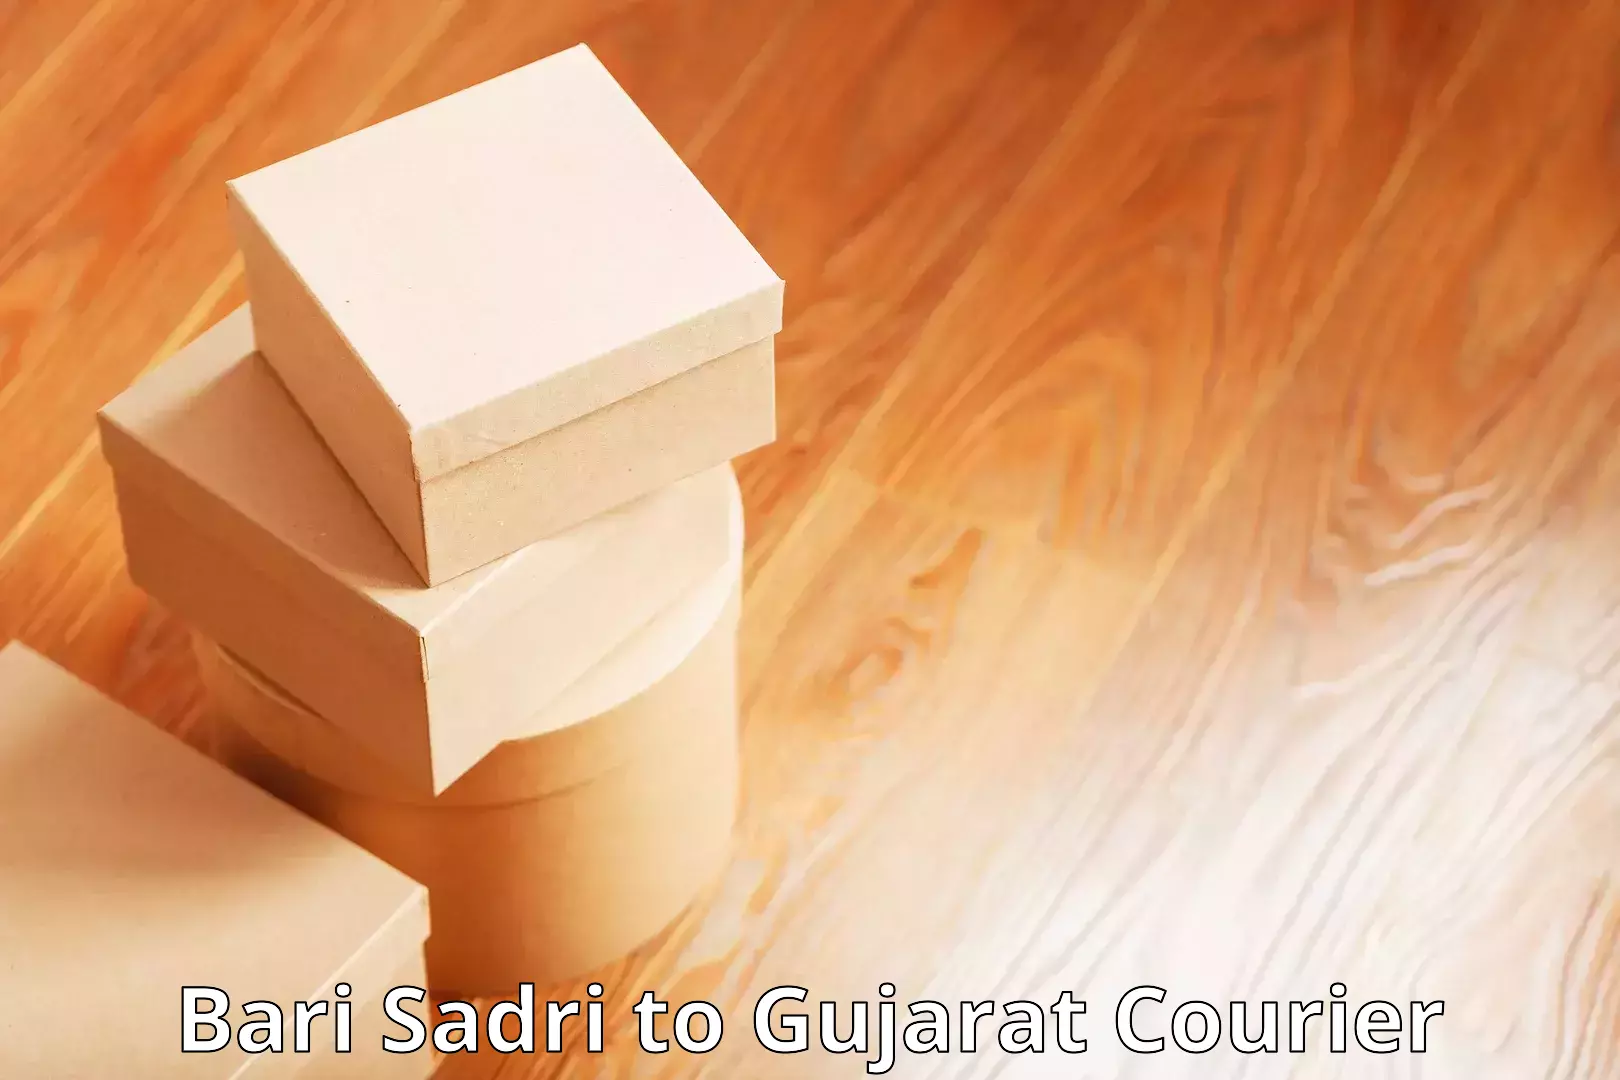 Courier service comparison Bari Sadri to Gujarat